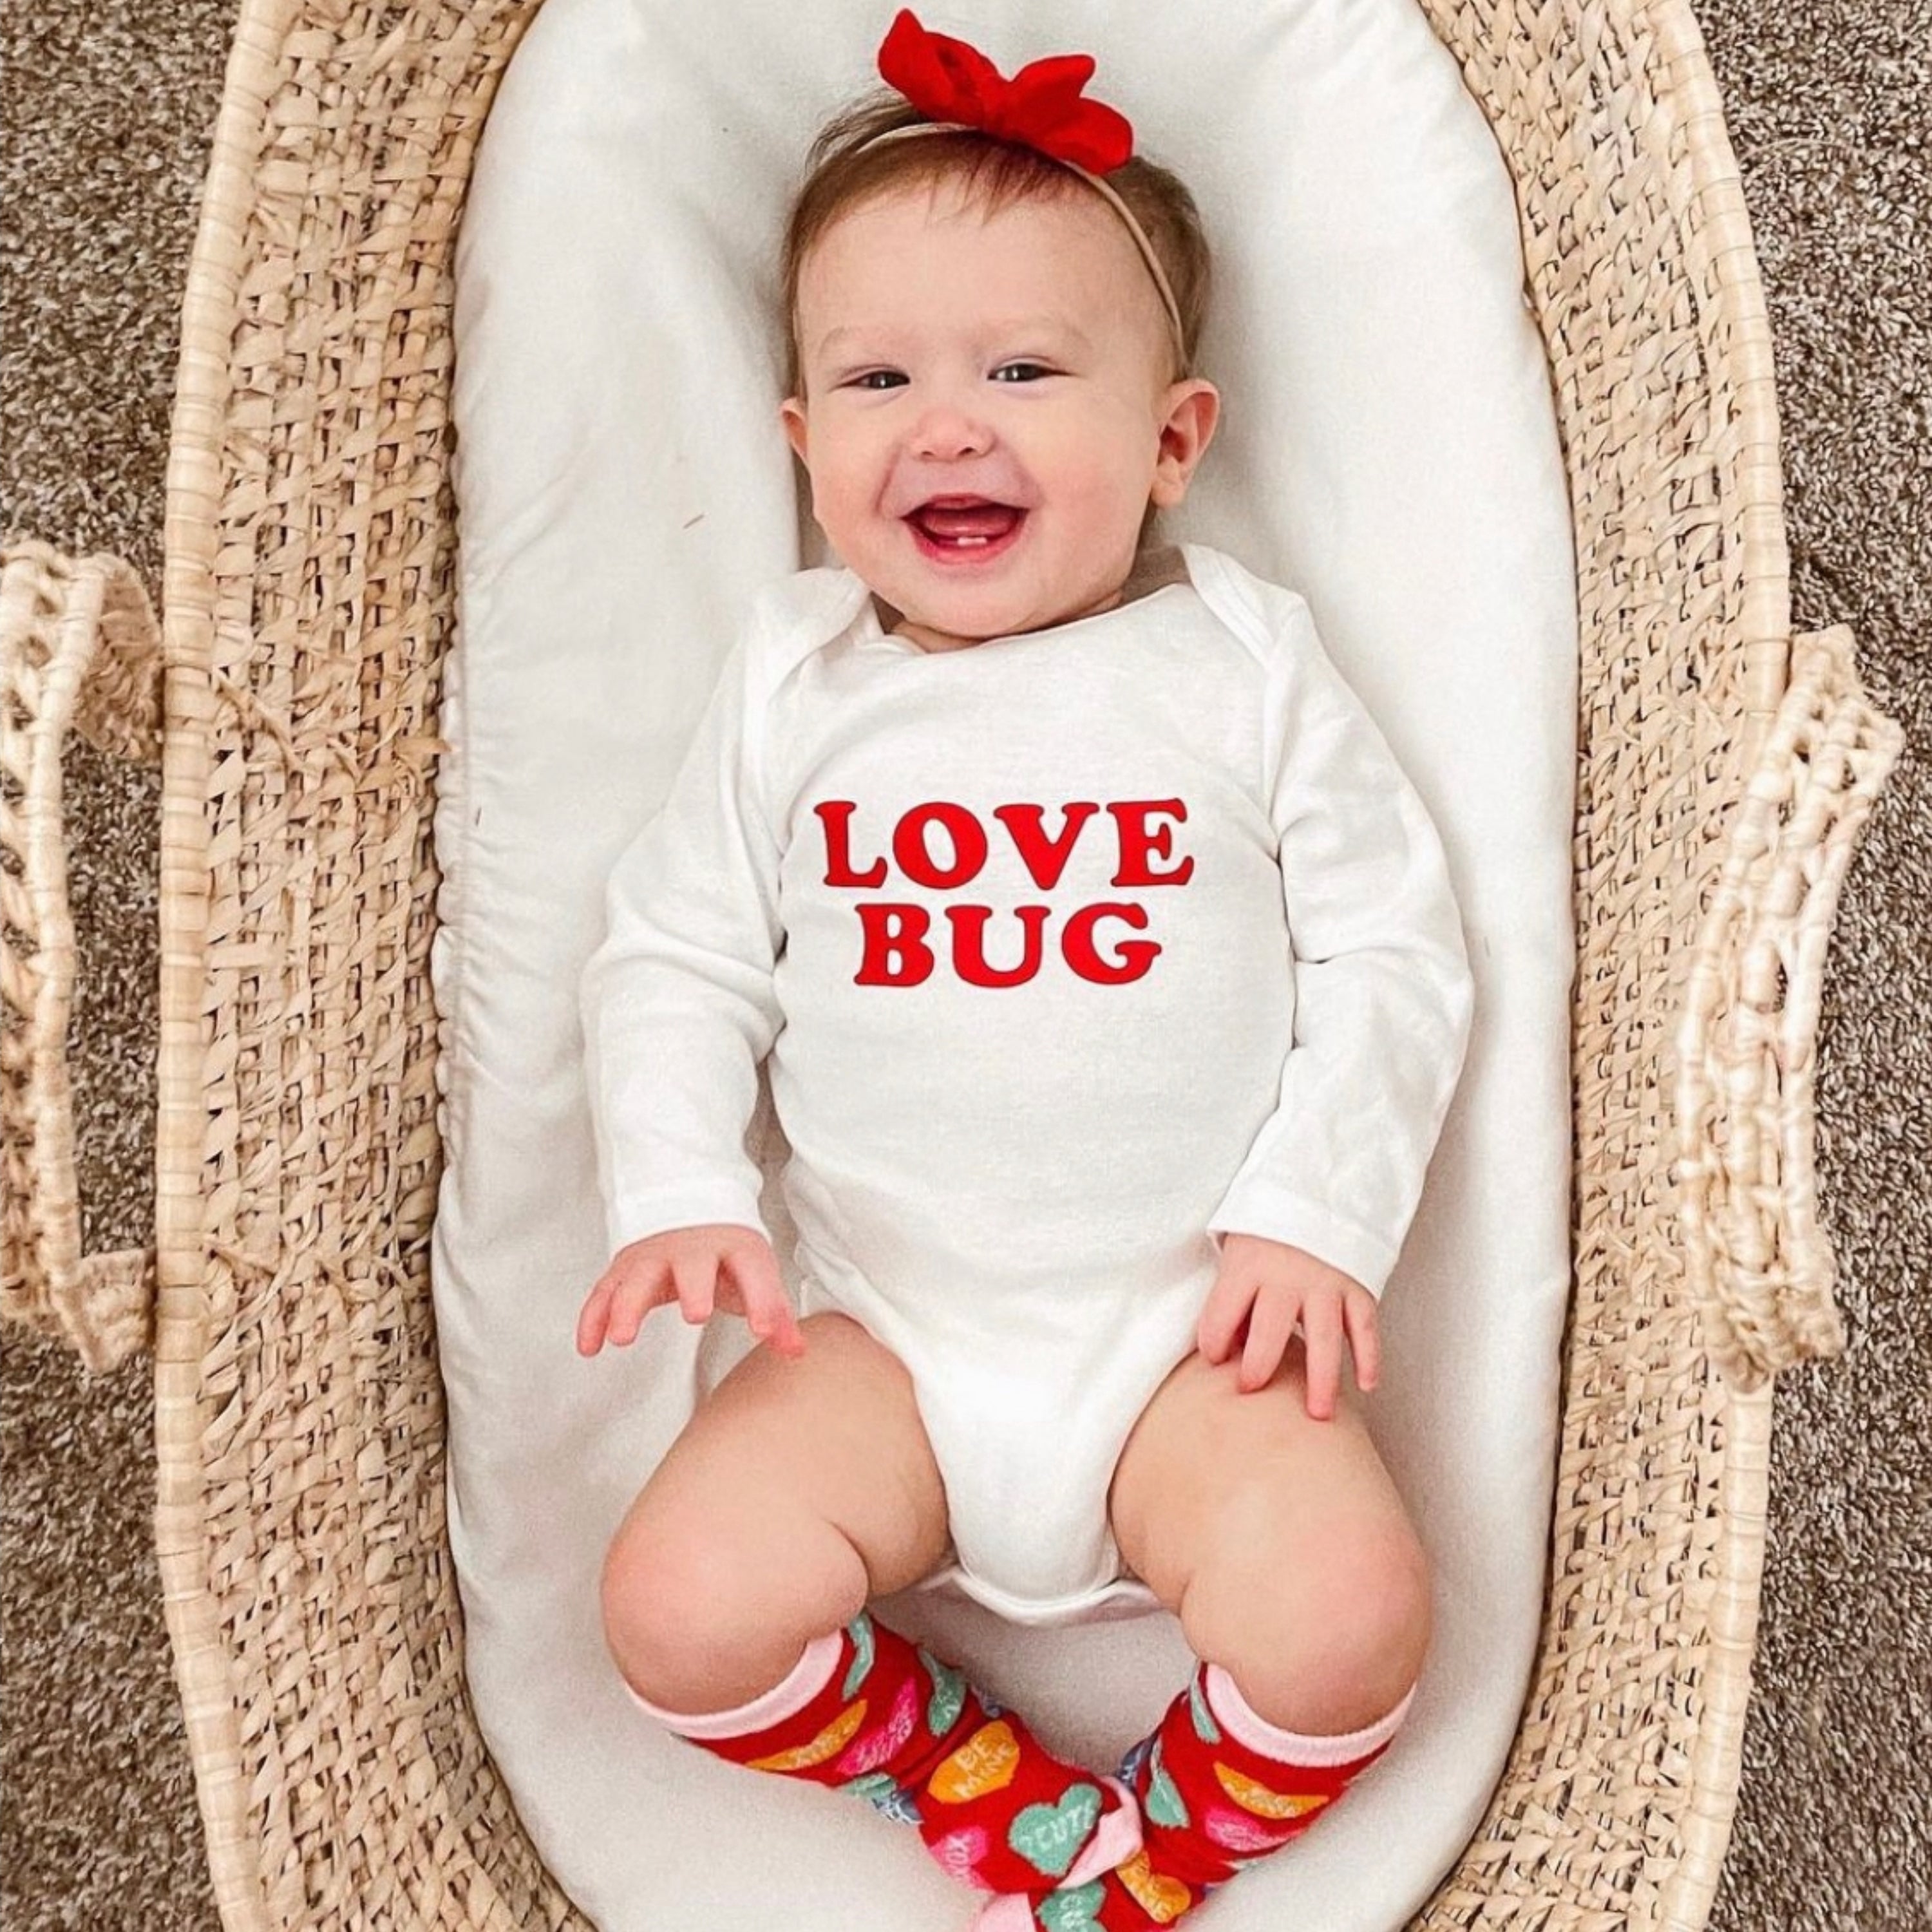 Love Bug - Long Sleeve Bodysuit